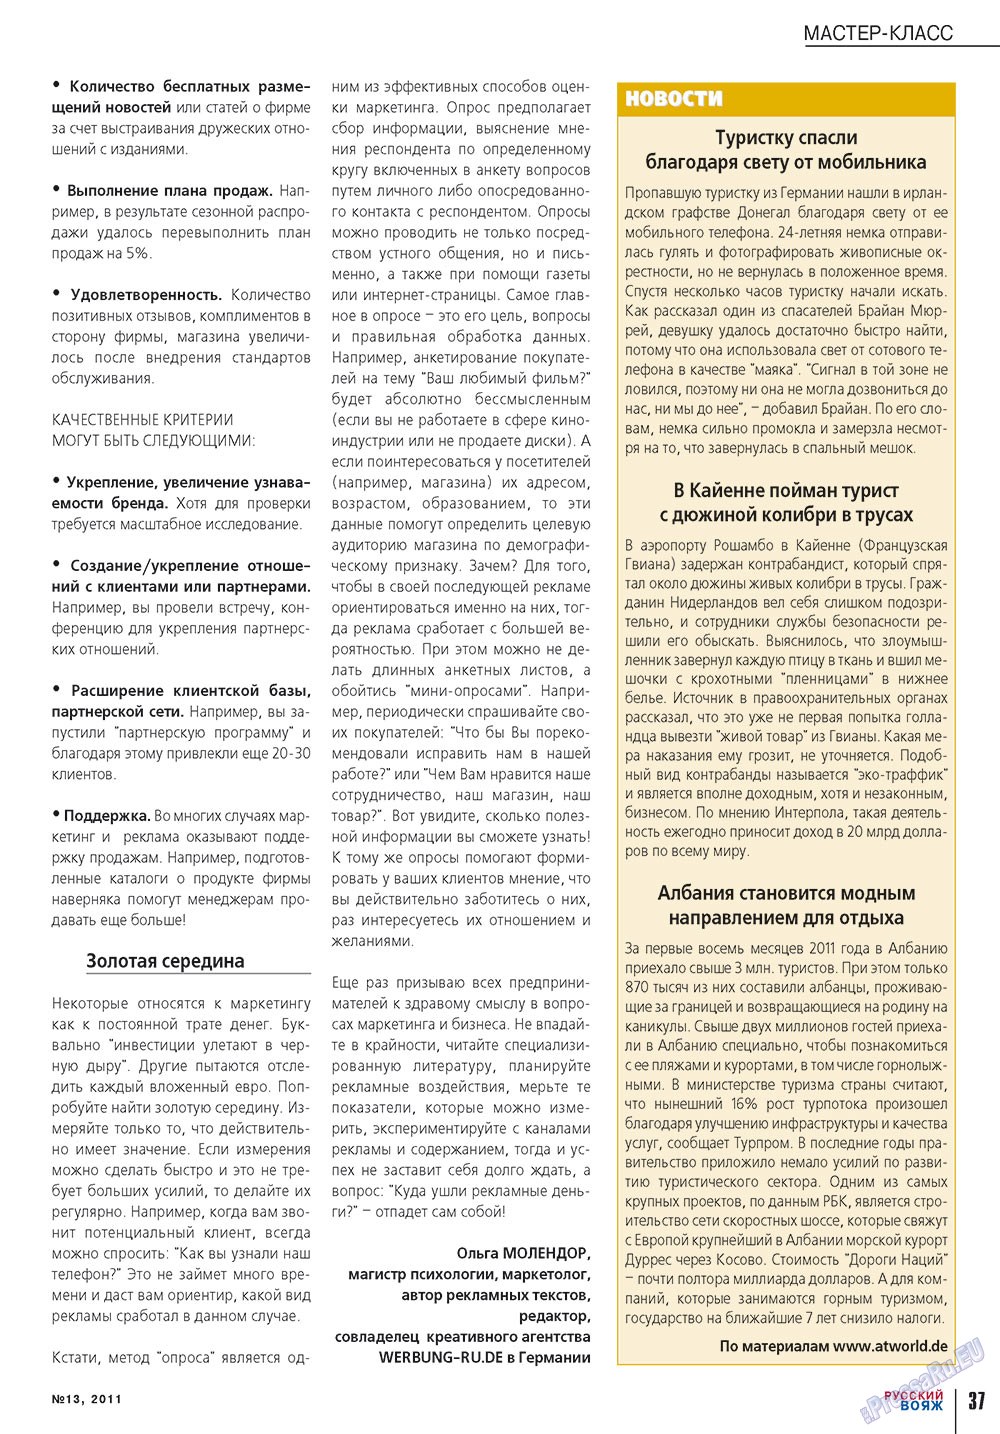 Русский вояж (журнал). 2011 год, номер 13, стр. 37